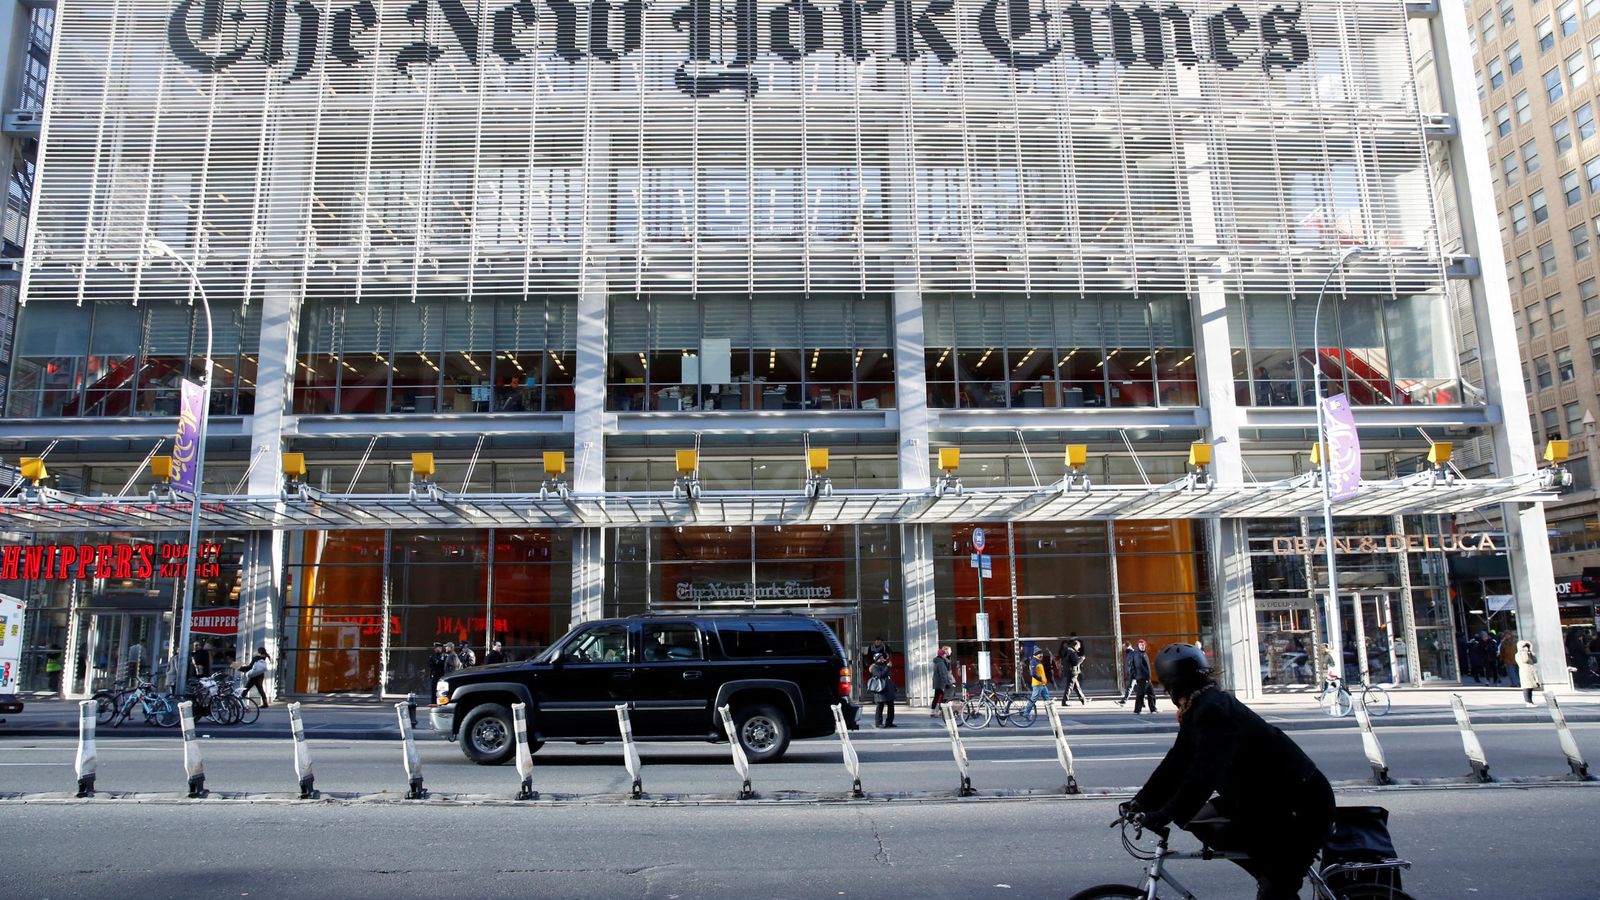 Foto: La caravana del presidente electo Donald Trump llega al edificio del diario "The New York Times", el 22 de noviembre de 2016 (Reuters)